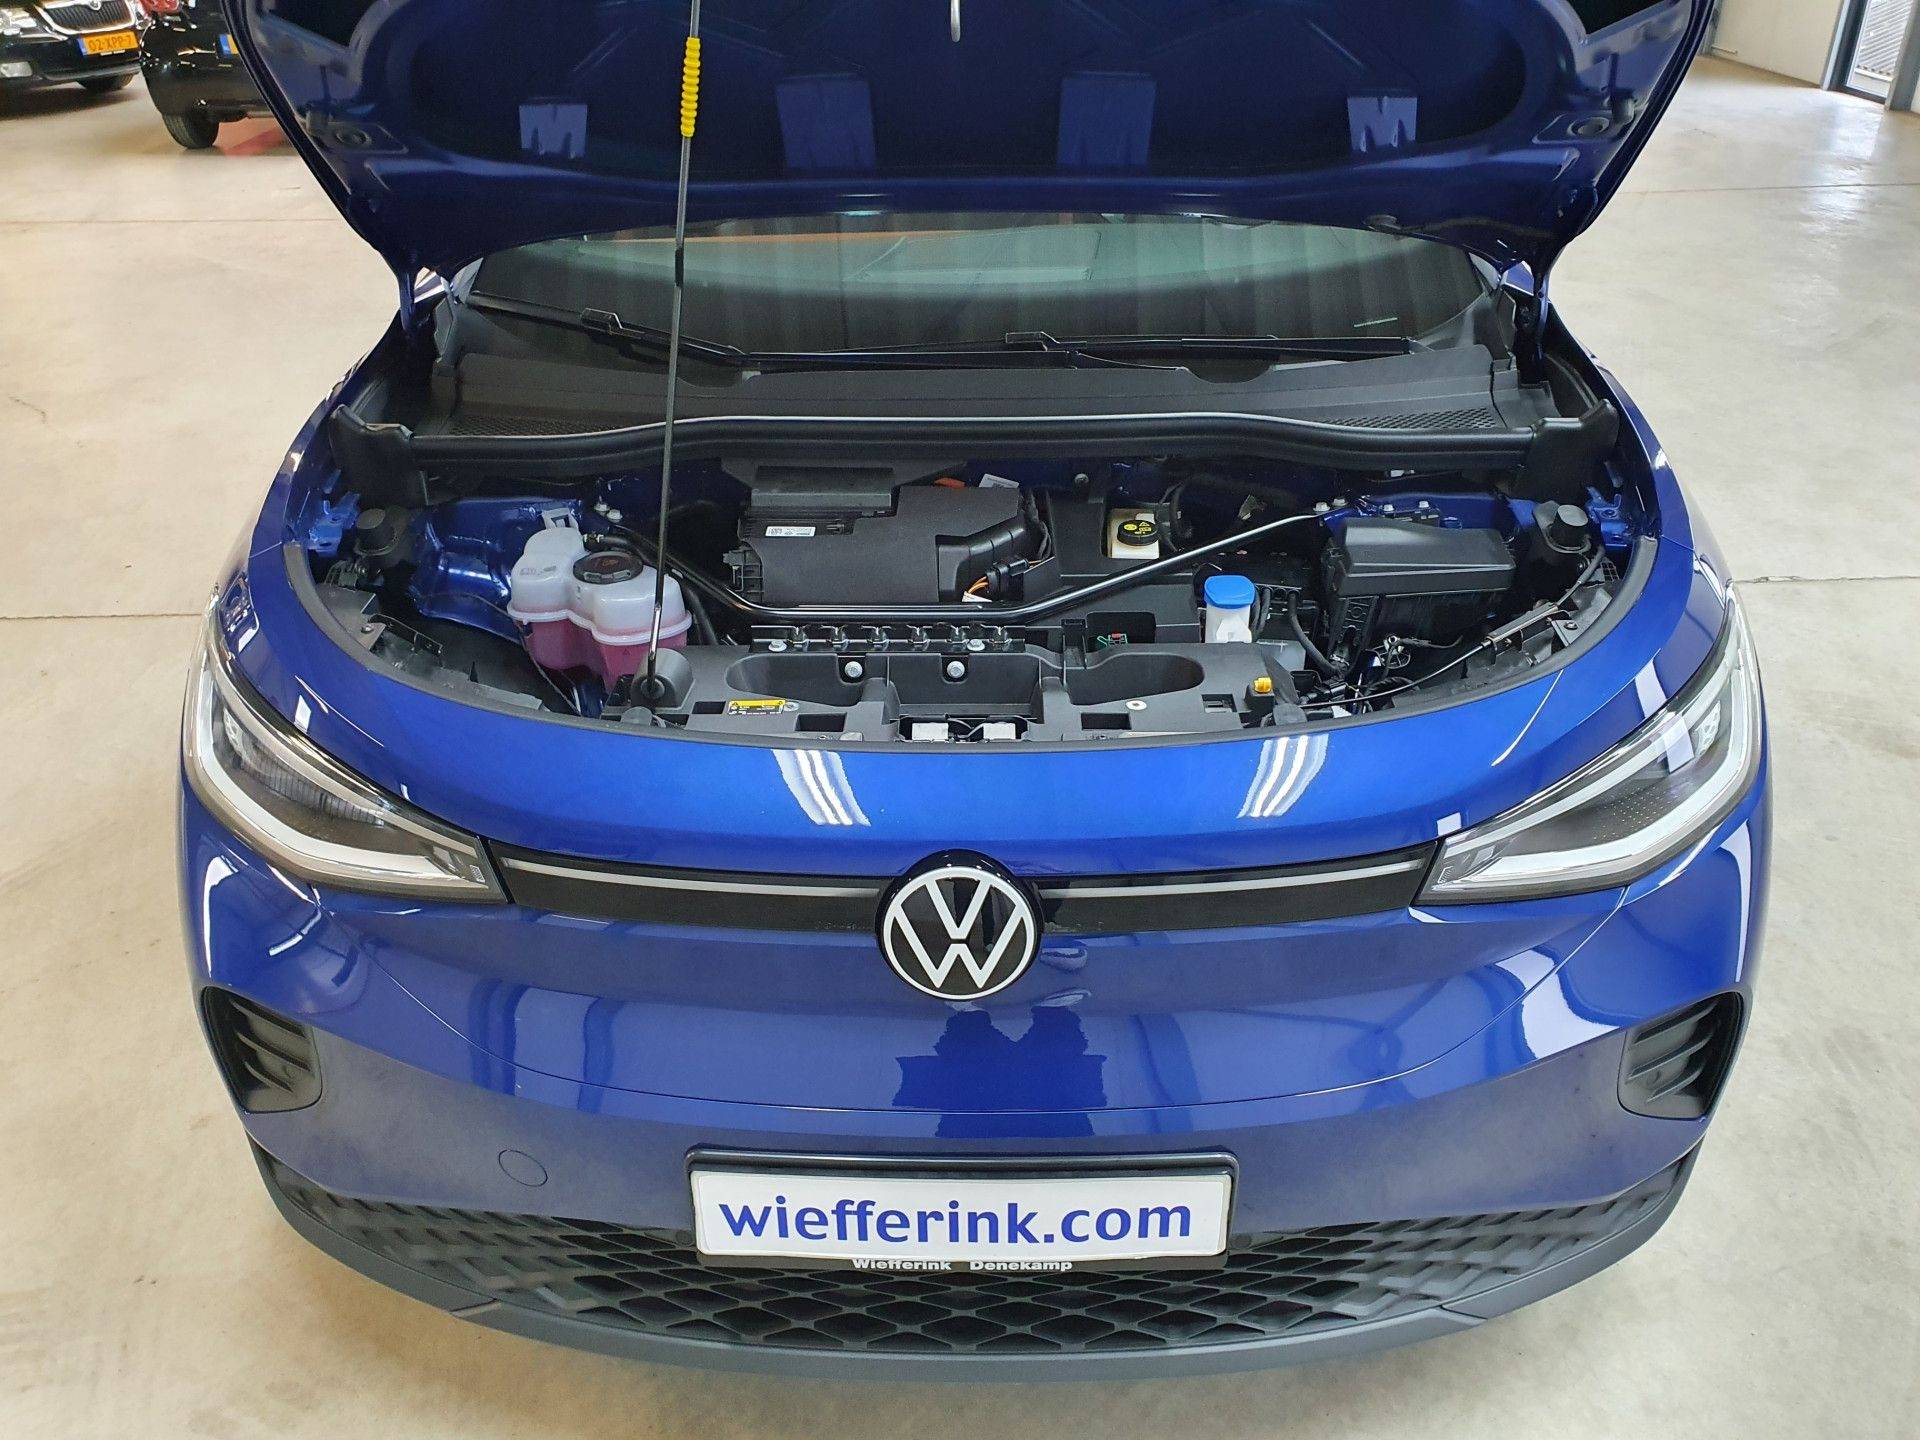 Volkswagen ID.4 Style 52 kWh bijtelling va 194 p/m Navigatie Camera trekhaak - 25/26